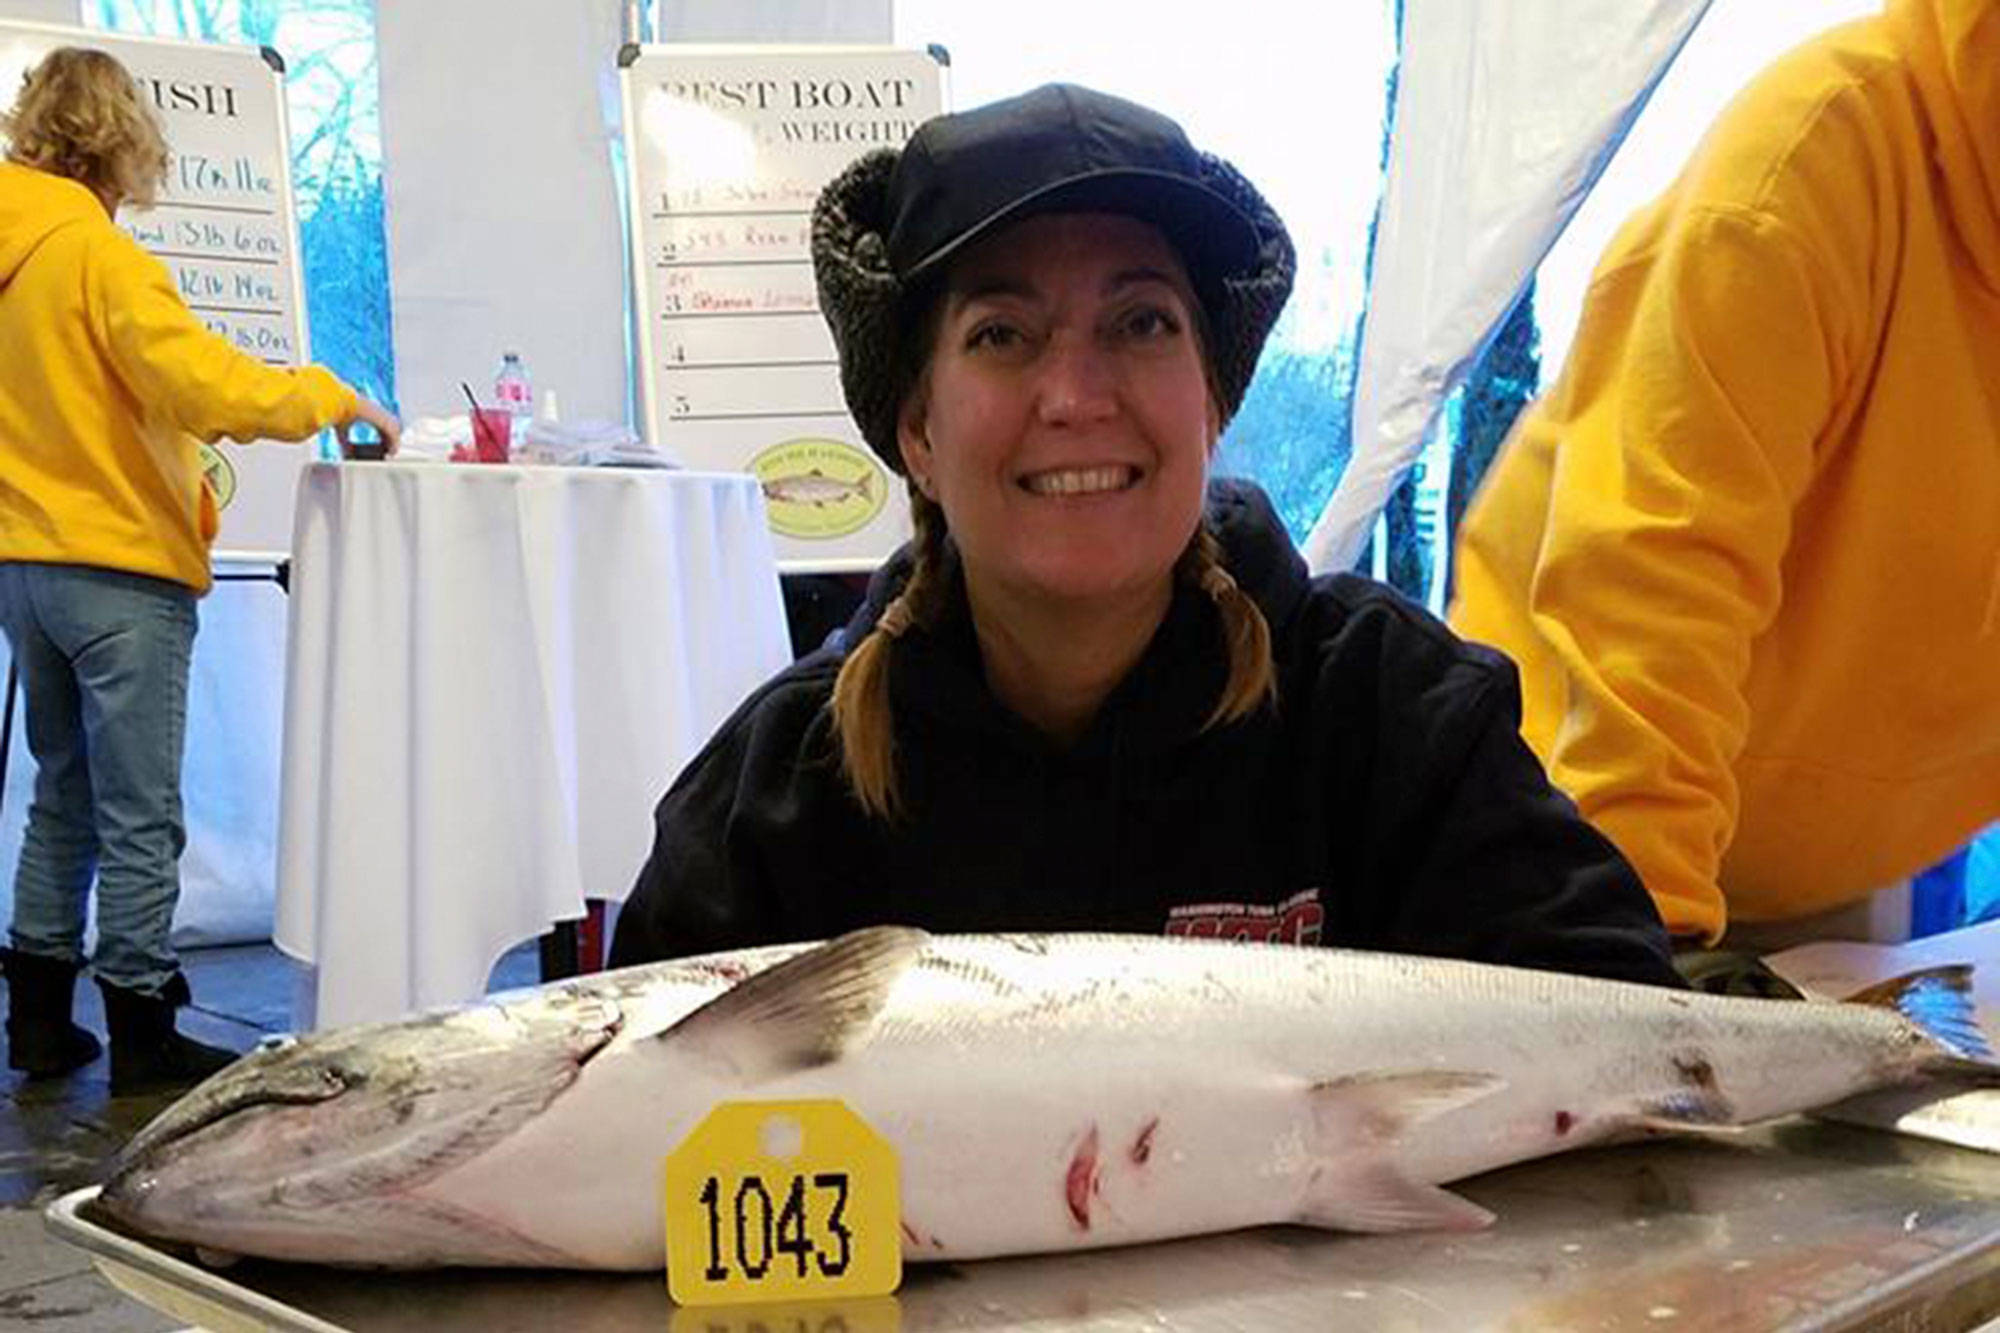 15th Annual Roche Harbor Salmon Classic results